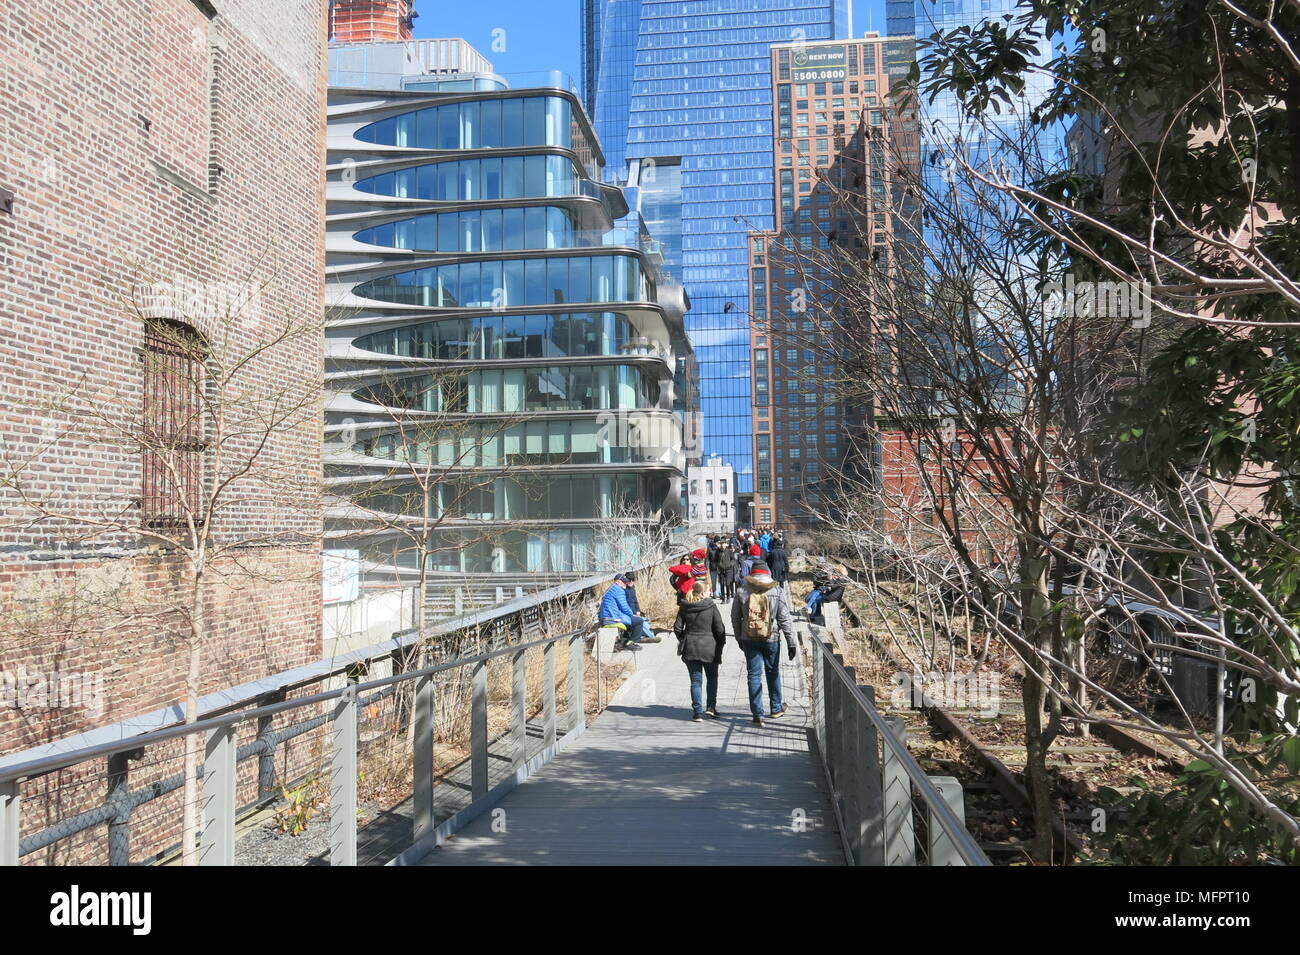 Une vue de la ligne 'Haut', New York : passerelle surélevée de 1,45 milles de l'architecture, le paysage, la plantation et d'installations artistiques Banque D'Images